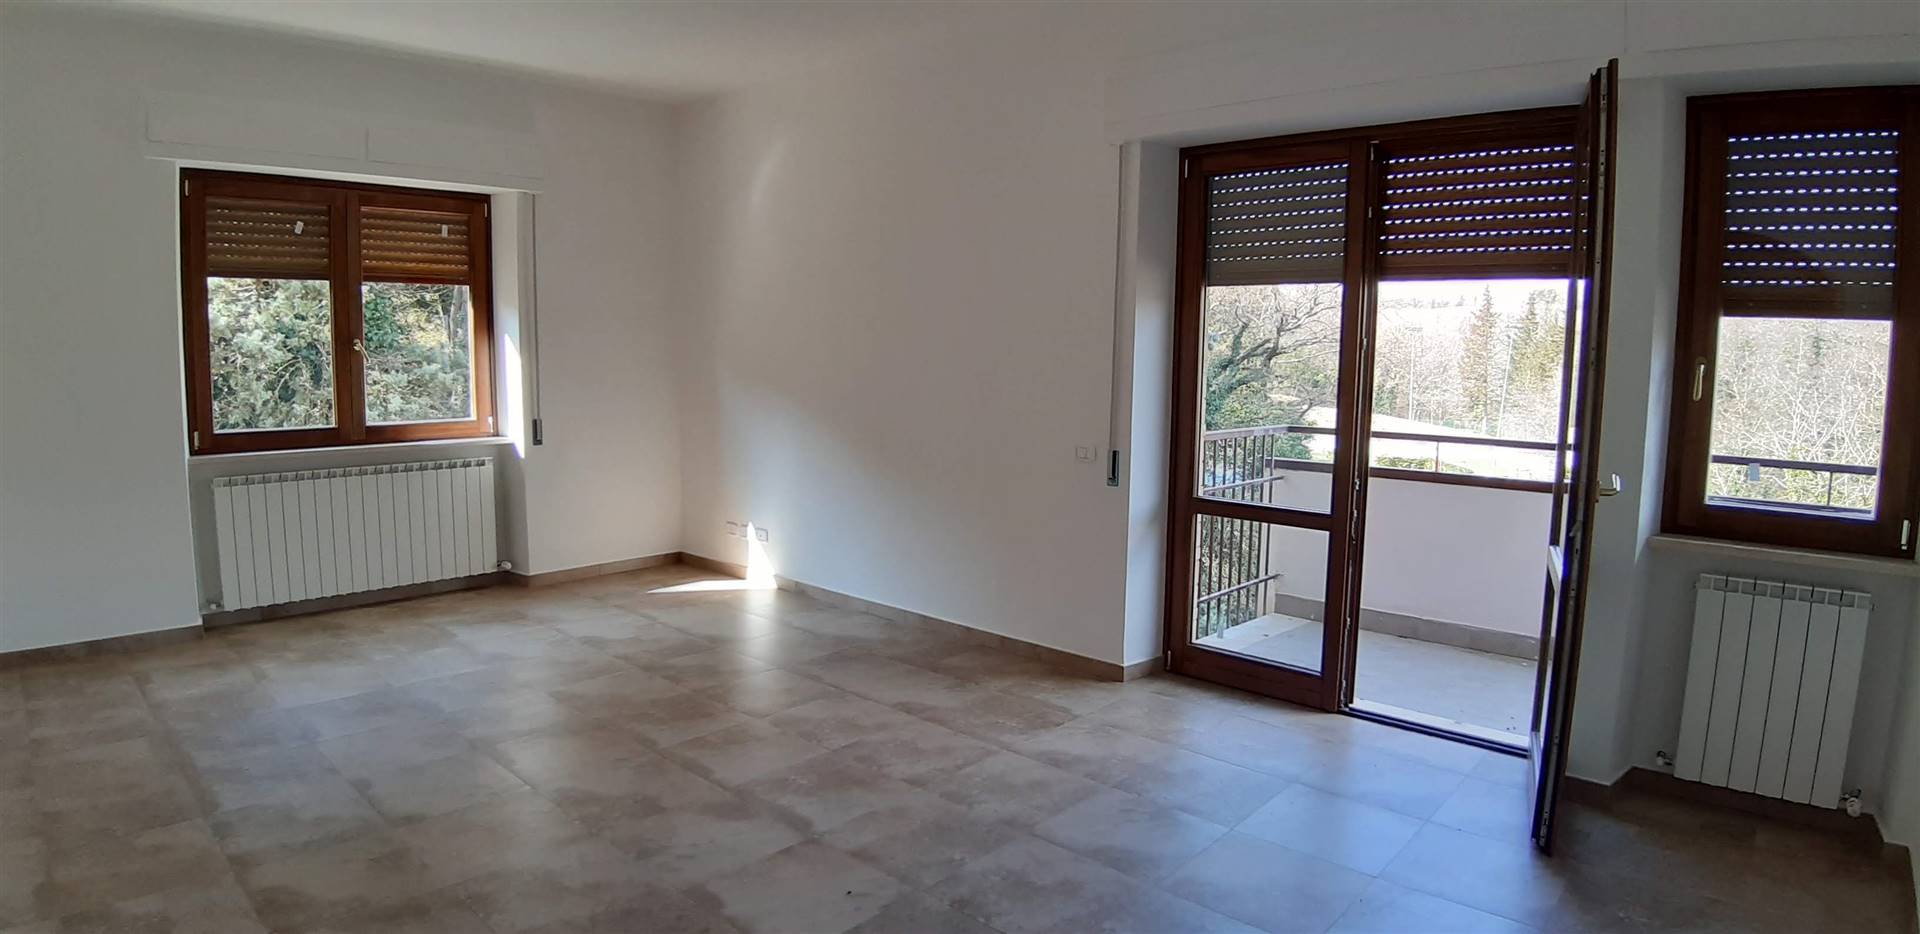 Appartamento in vendita a Chianciano Terme, 6 locali, prezzo € 149.000 | PortaleAgenzieImmobiliari.it